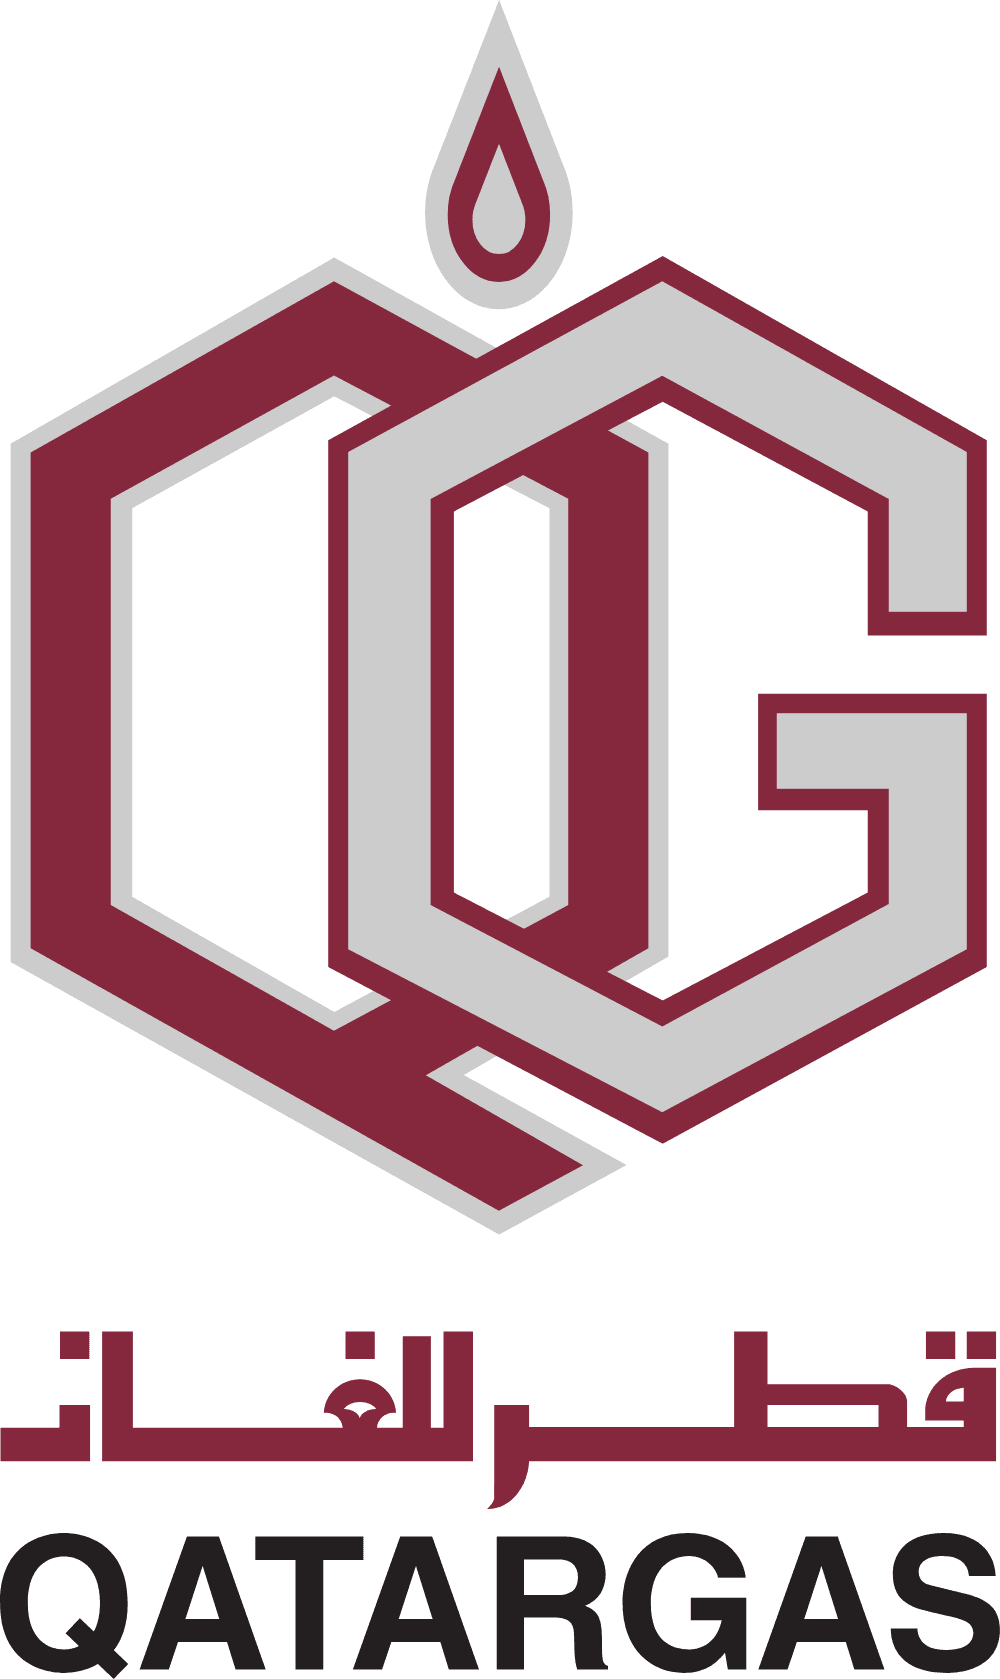 Qatargas Logo download